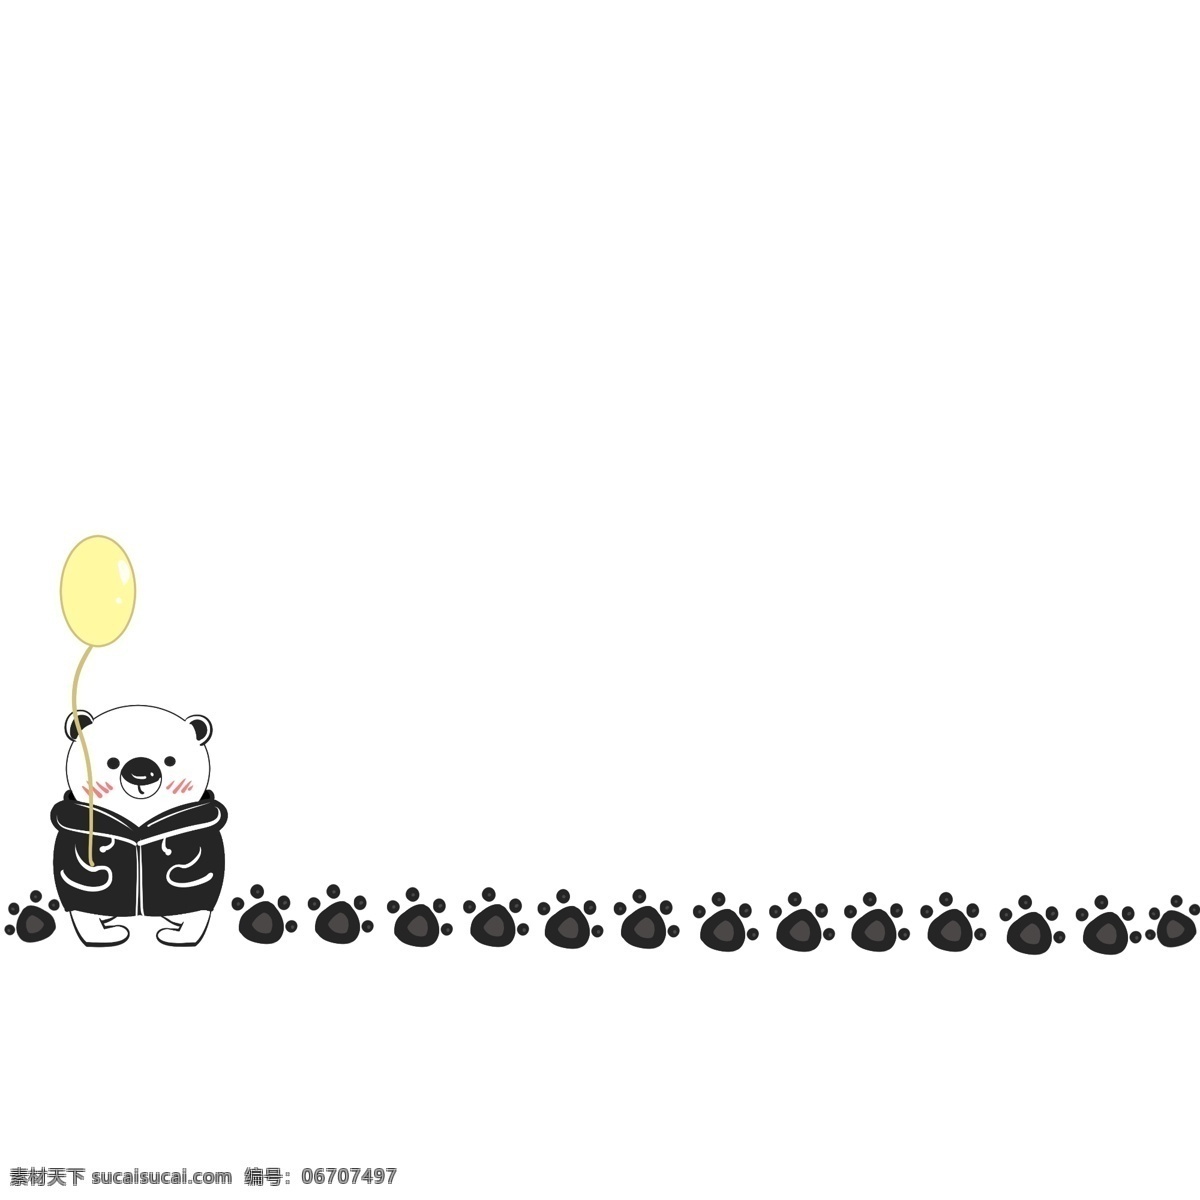 熊 分割线 卡通 插画 可爱的大熊 卡通插画 分割线插画 简易分割线 装饰的插画 气球 小熊